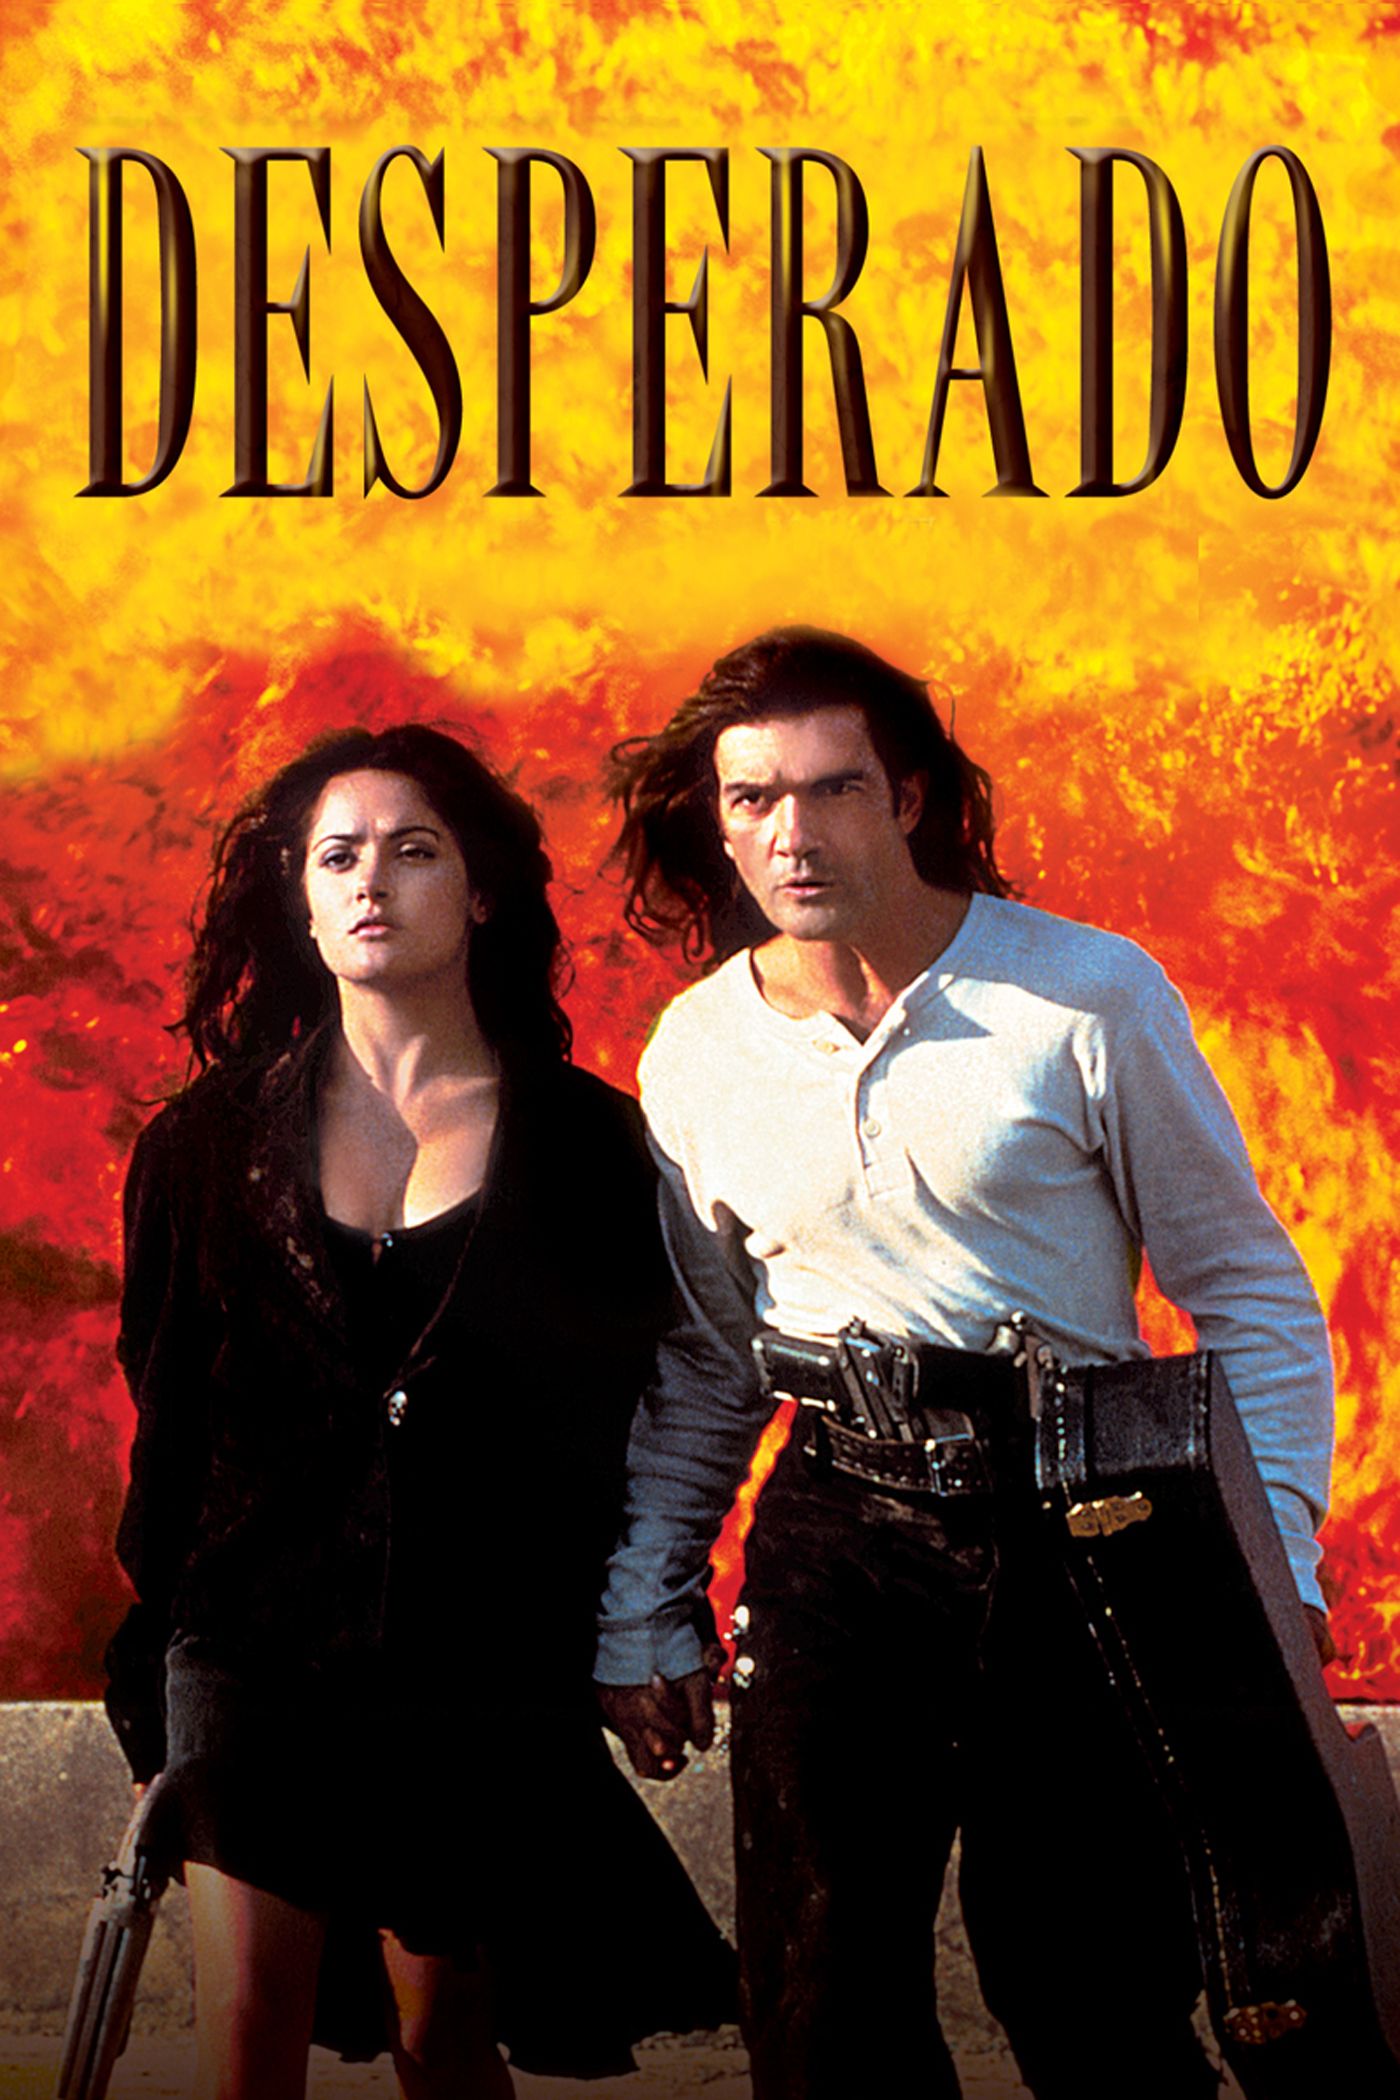 cathy nicholas recommends Desperado Movie Online Free